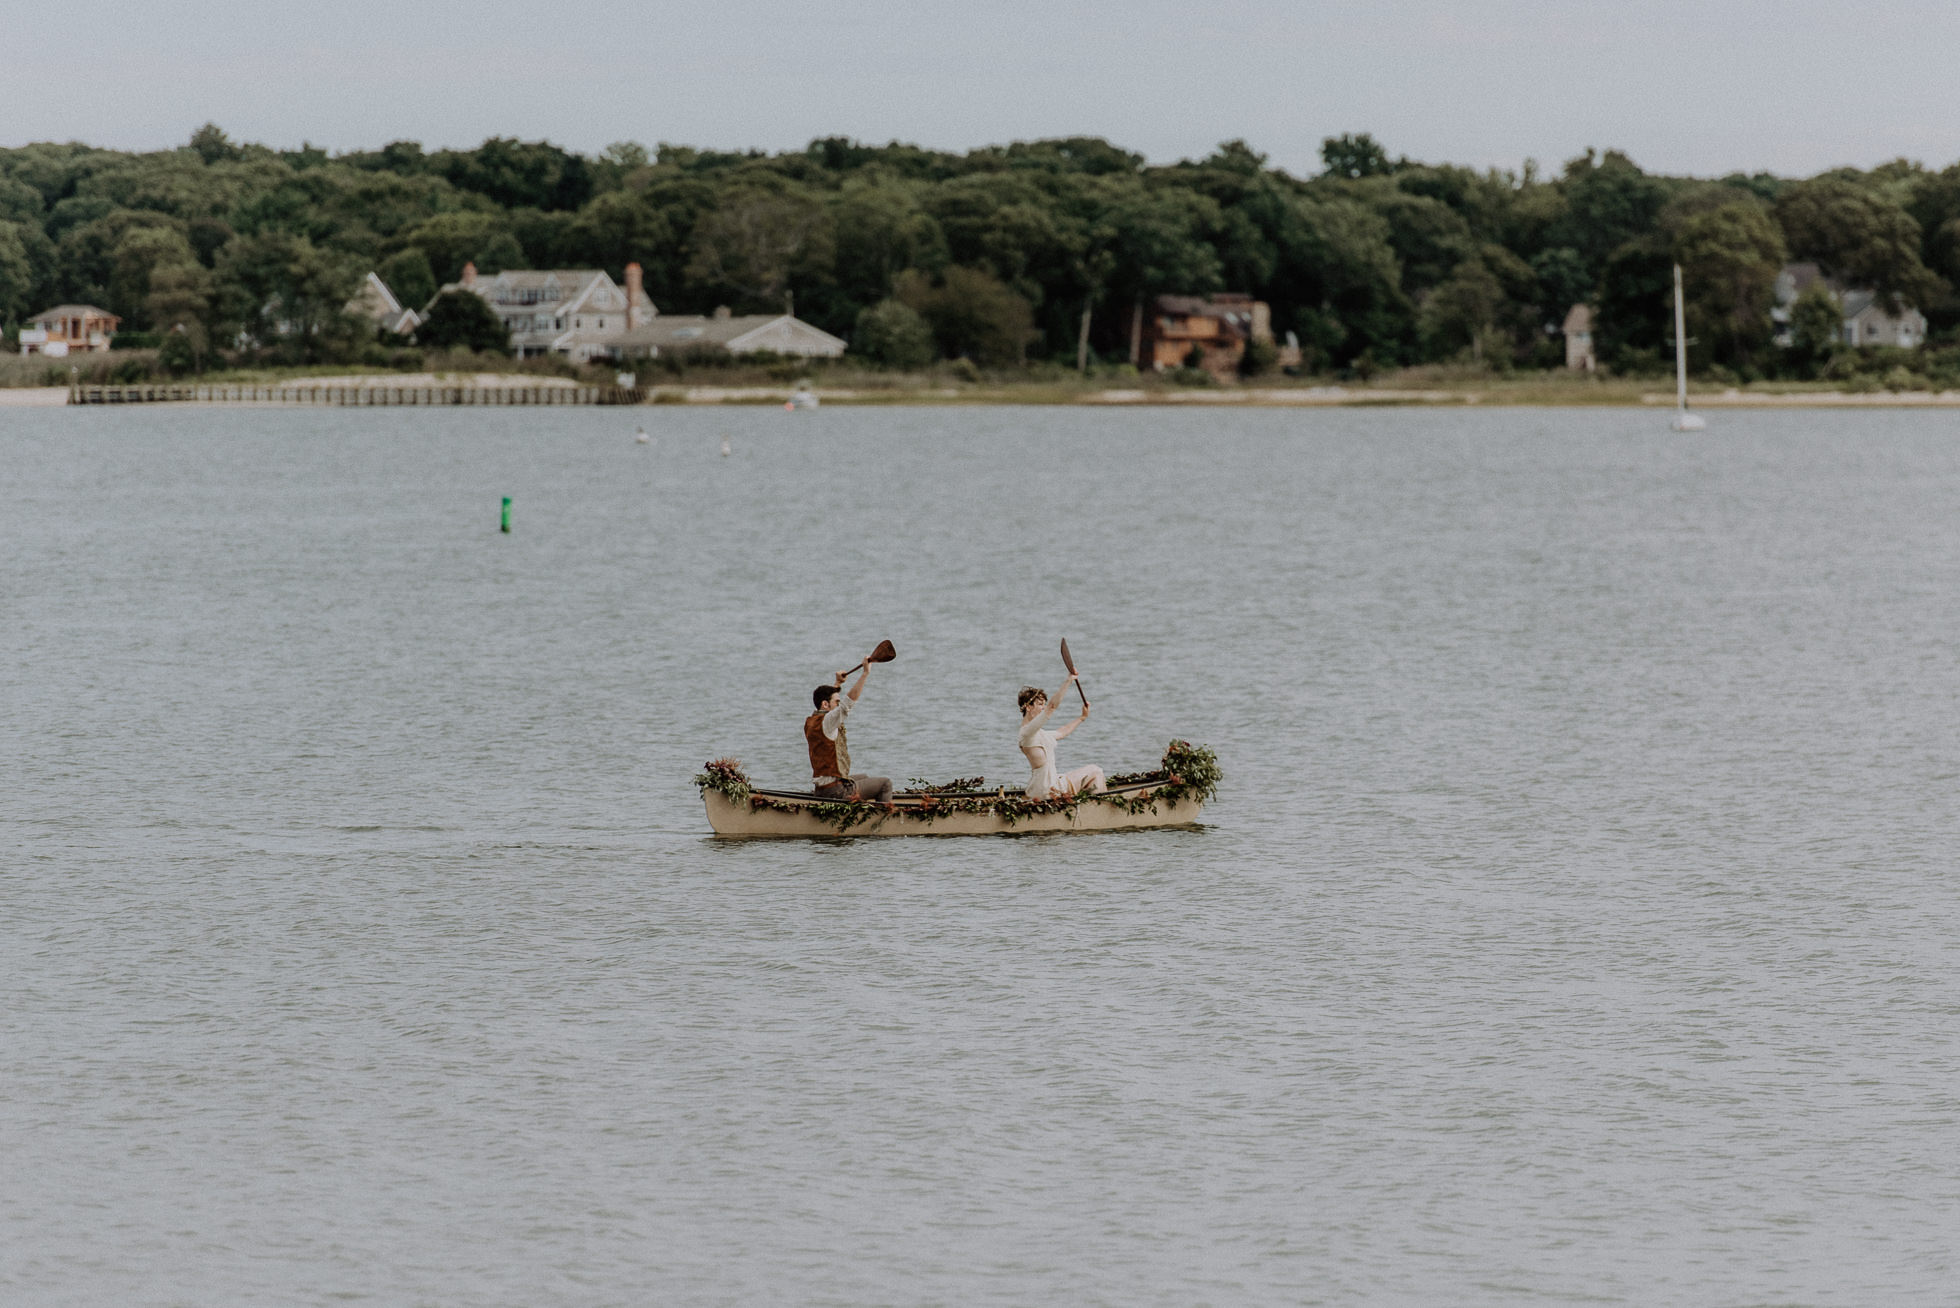 wedding canoe on the water